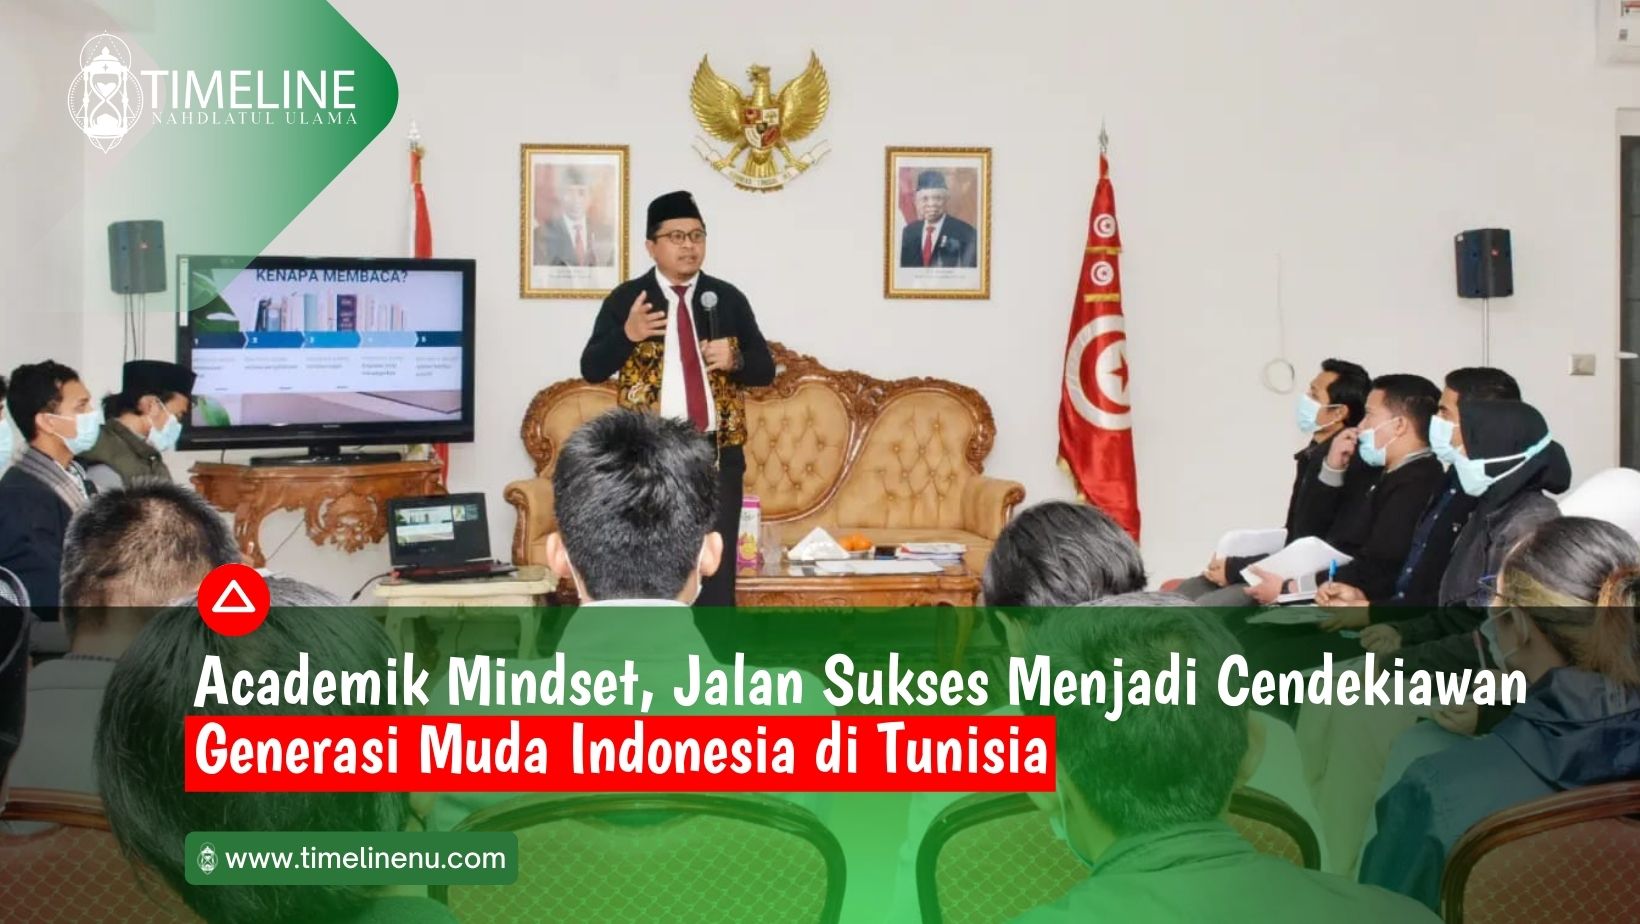 Academik Mindset, Jalan Sukses Menjadi Cendekiawan Generasi Muda Indonesia di Tunisia